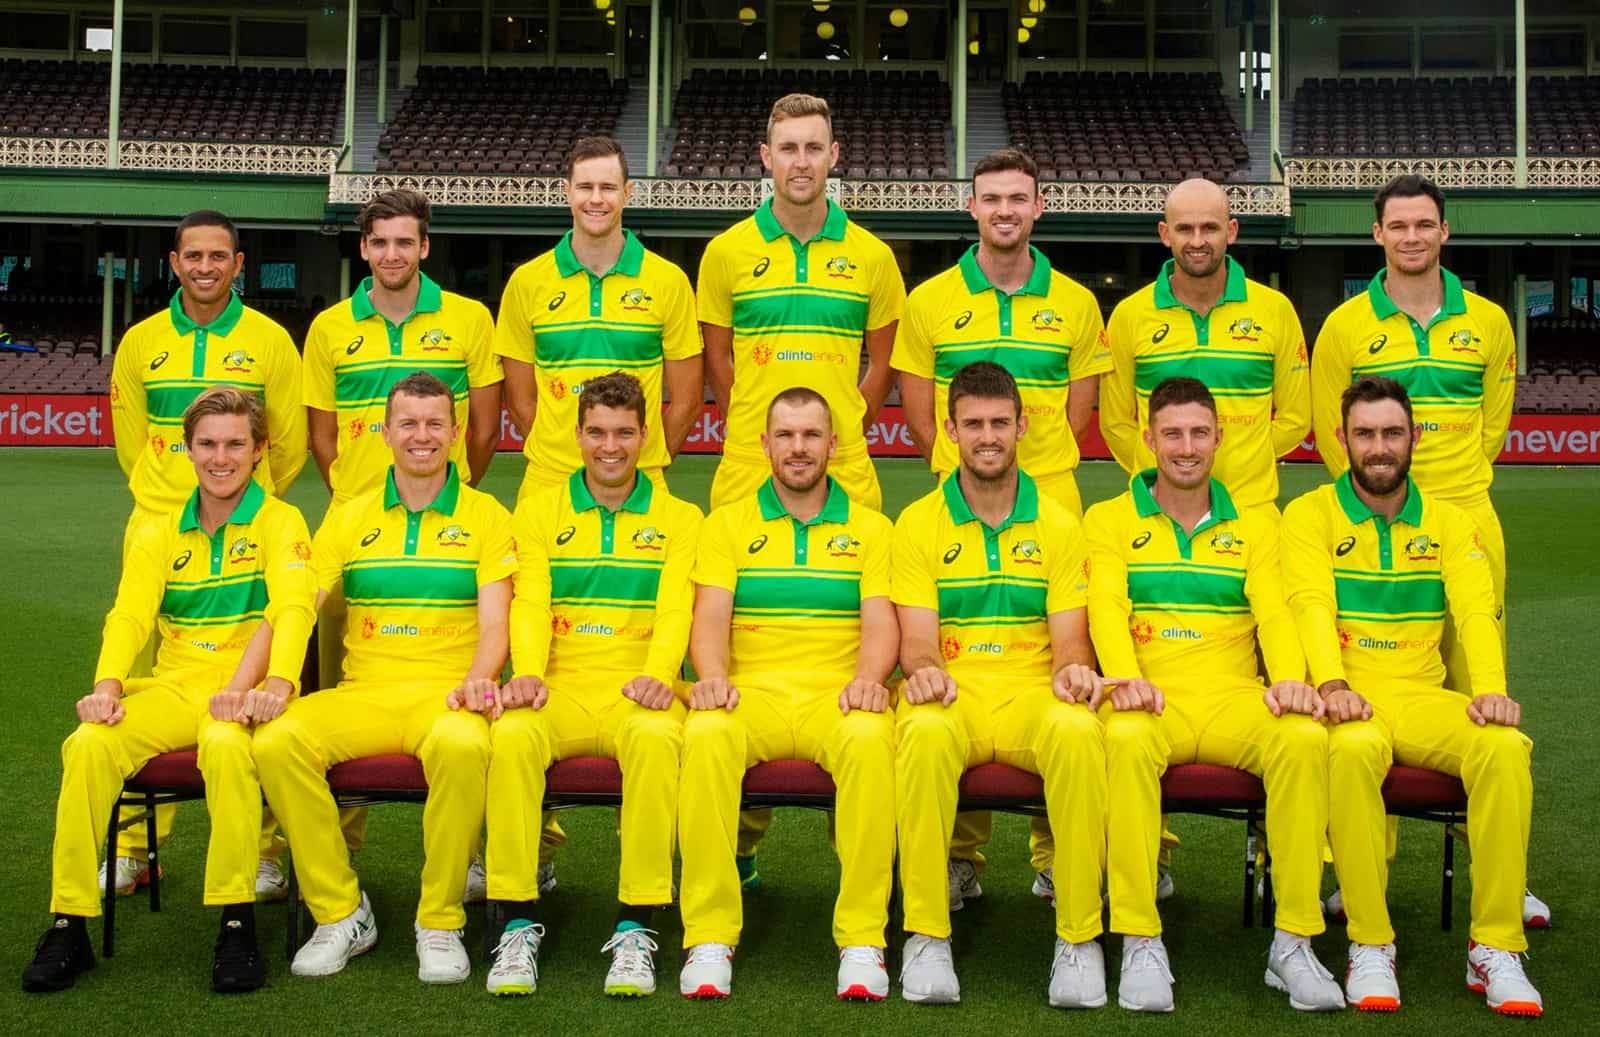 Cricket Australia Australia national cricket team Wikipedia Live